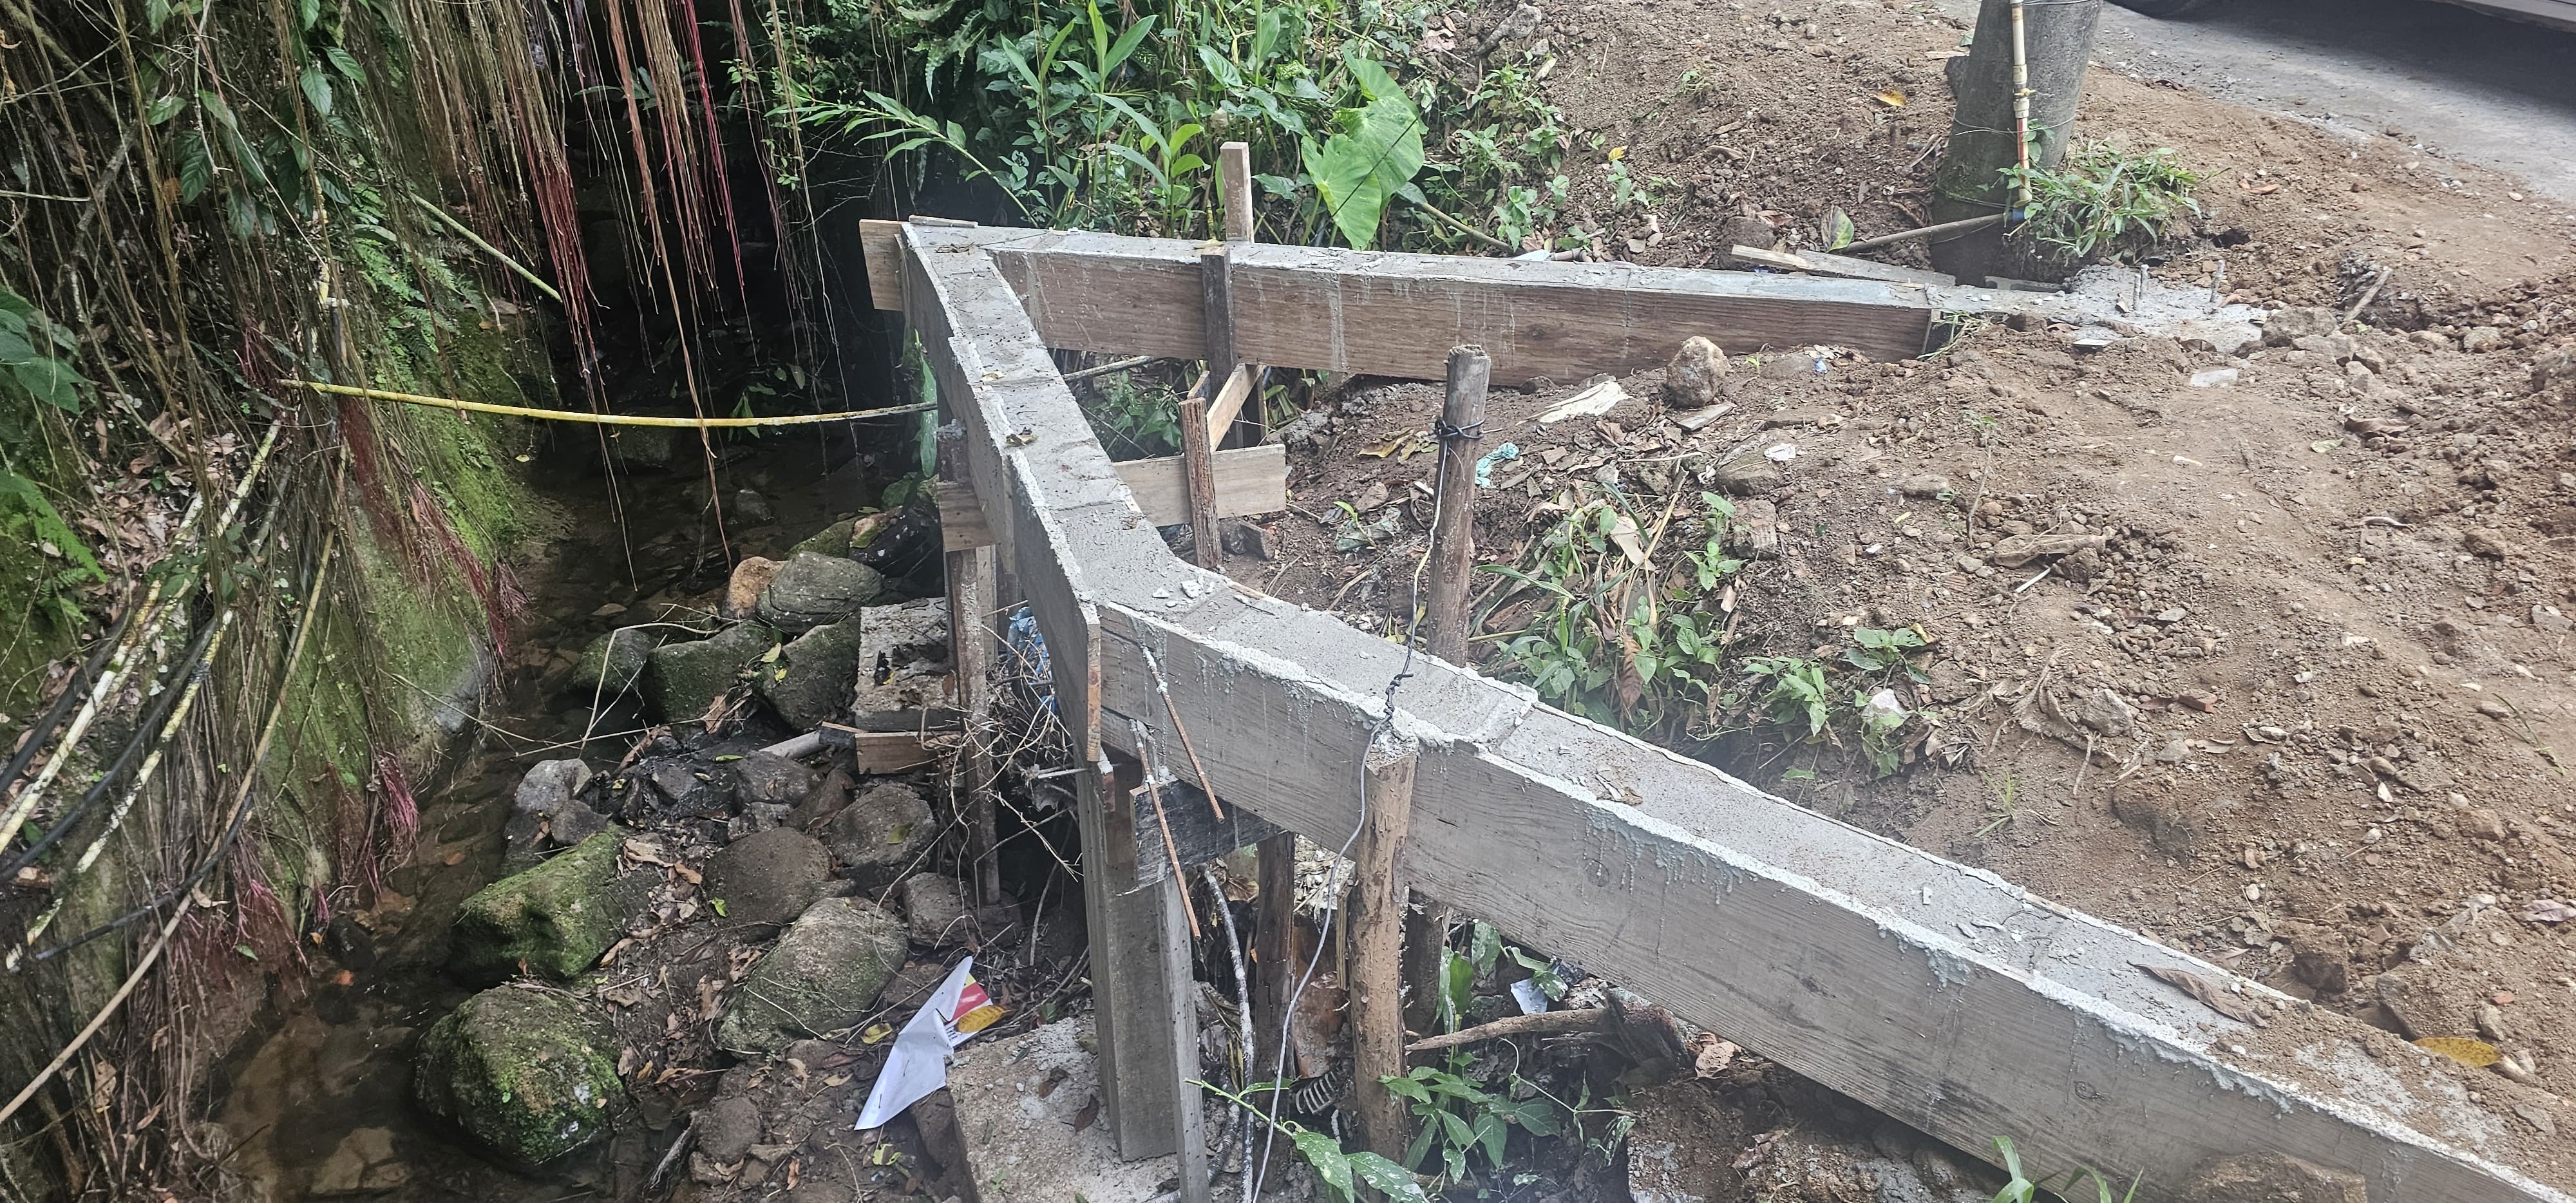 Polícia identifica crimes ambientais em cachoeira localizada em Mangaratiba 